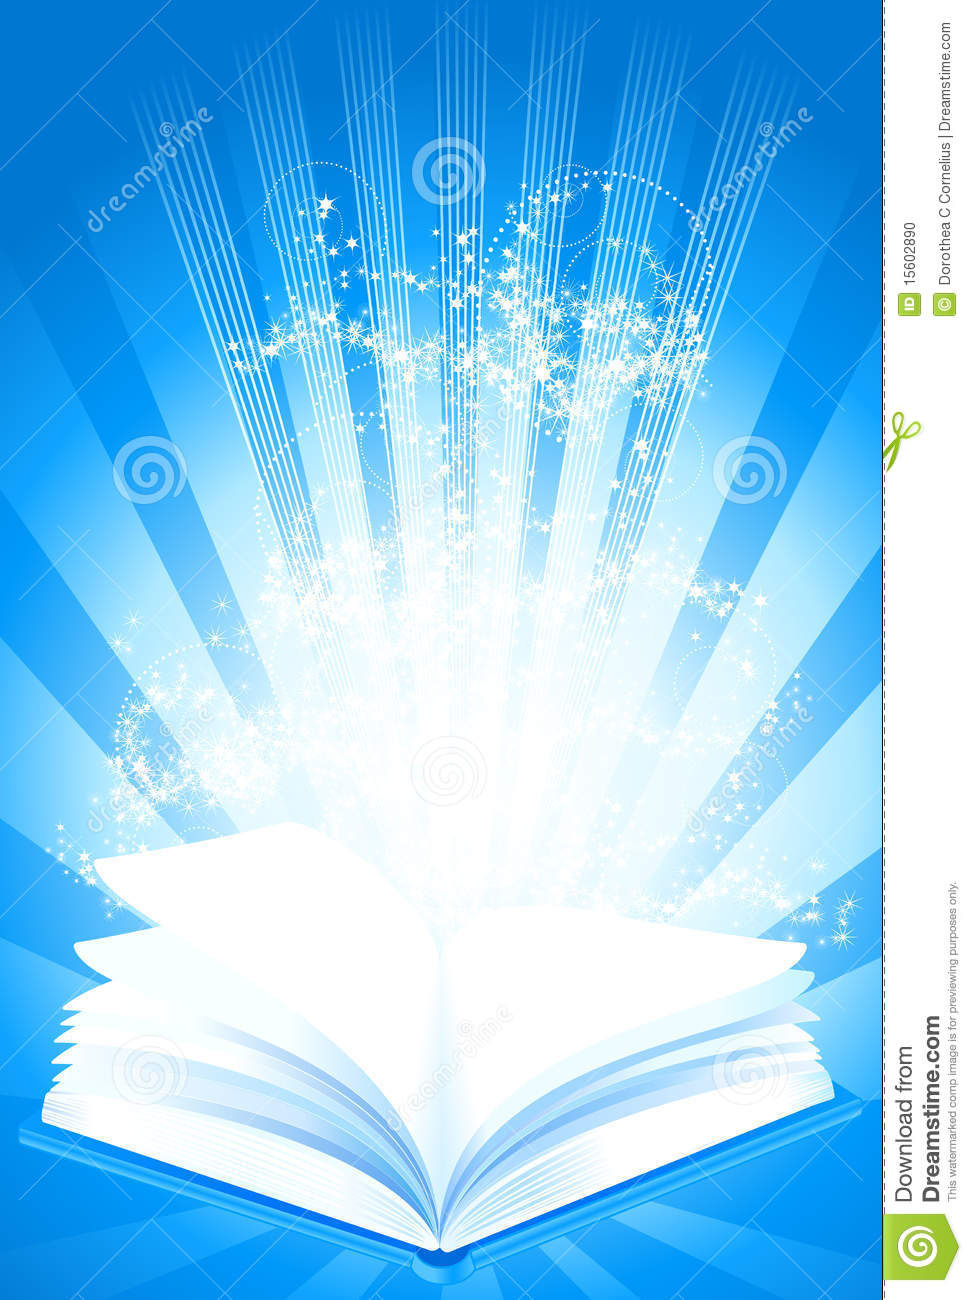 Magic Book Of Wisdom  File Includes Clipping Path